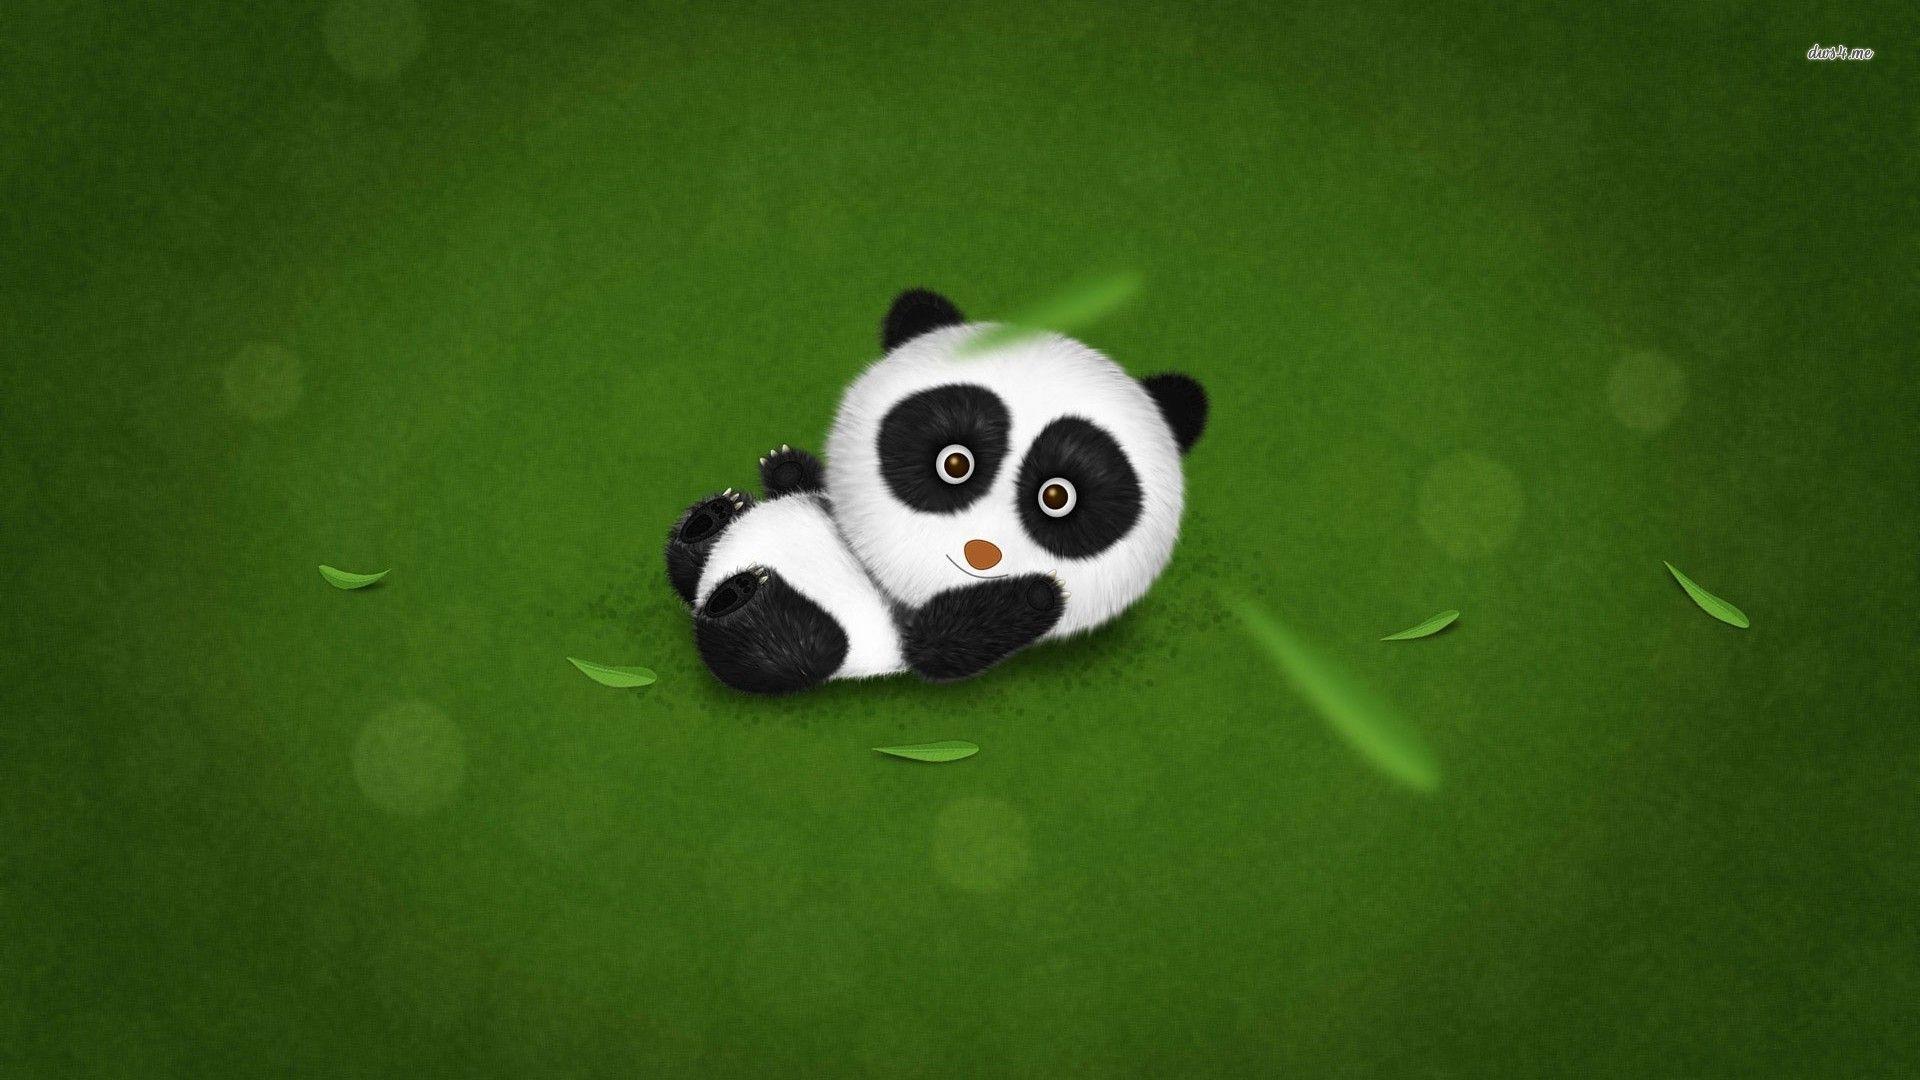 Wallpaper For > Cute Baby Panda Wallpaper